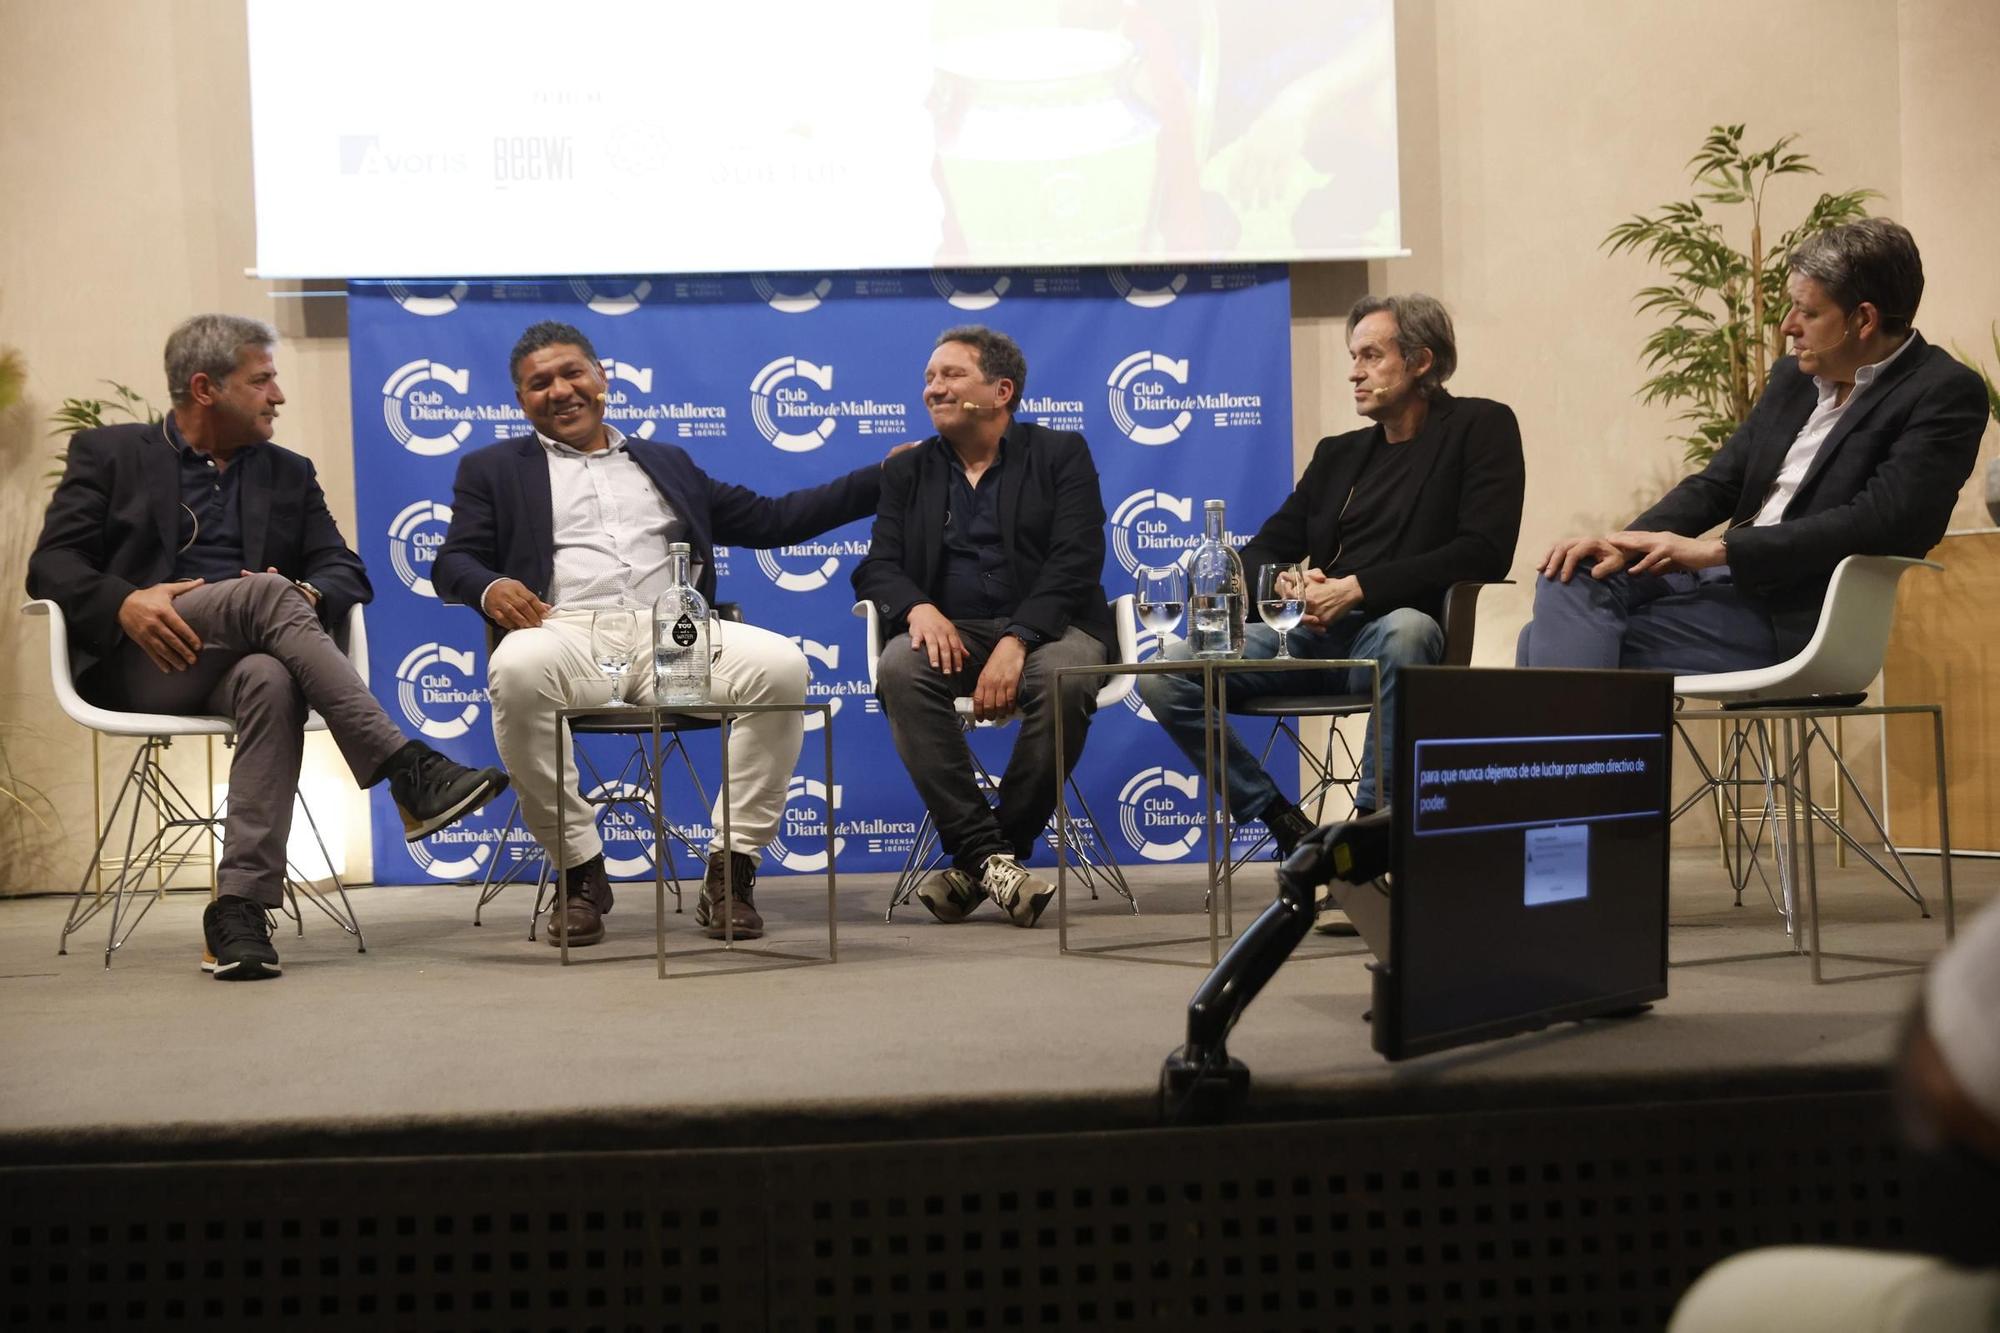 Las mejores fotos de la emocionante charla de Eusebio Sacristán en el Club Diario de Mallorca